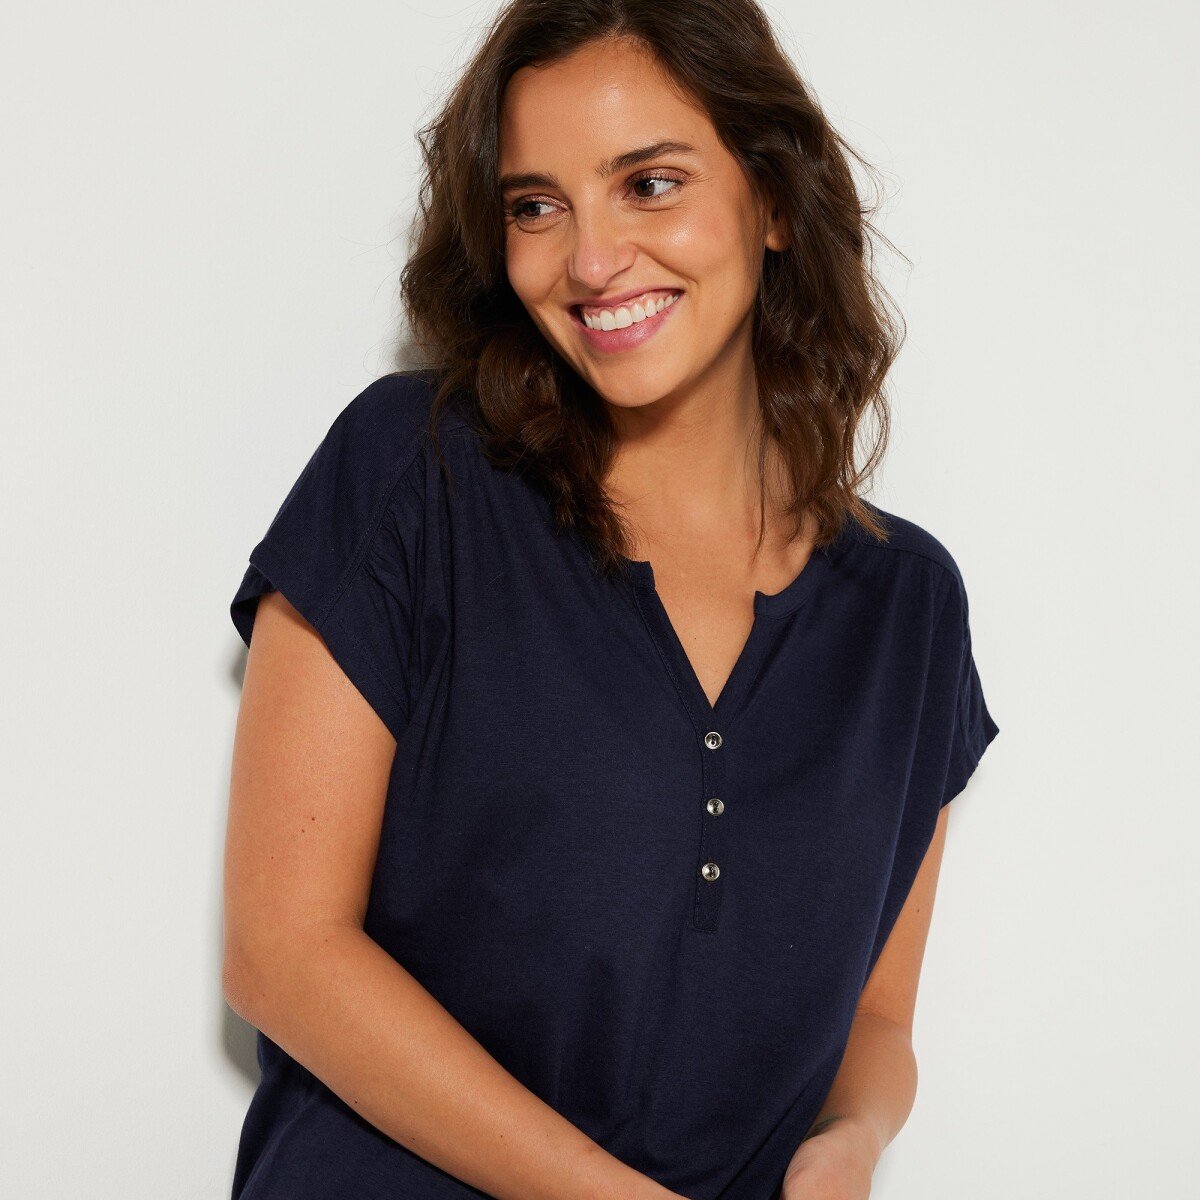 Jednofarebné tričko s tuniským výstrihom a krátkymi rukávmi